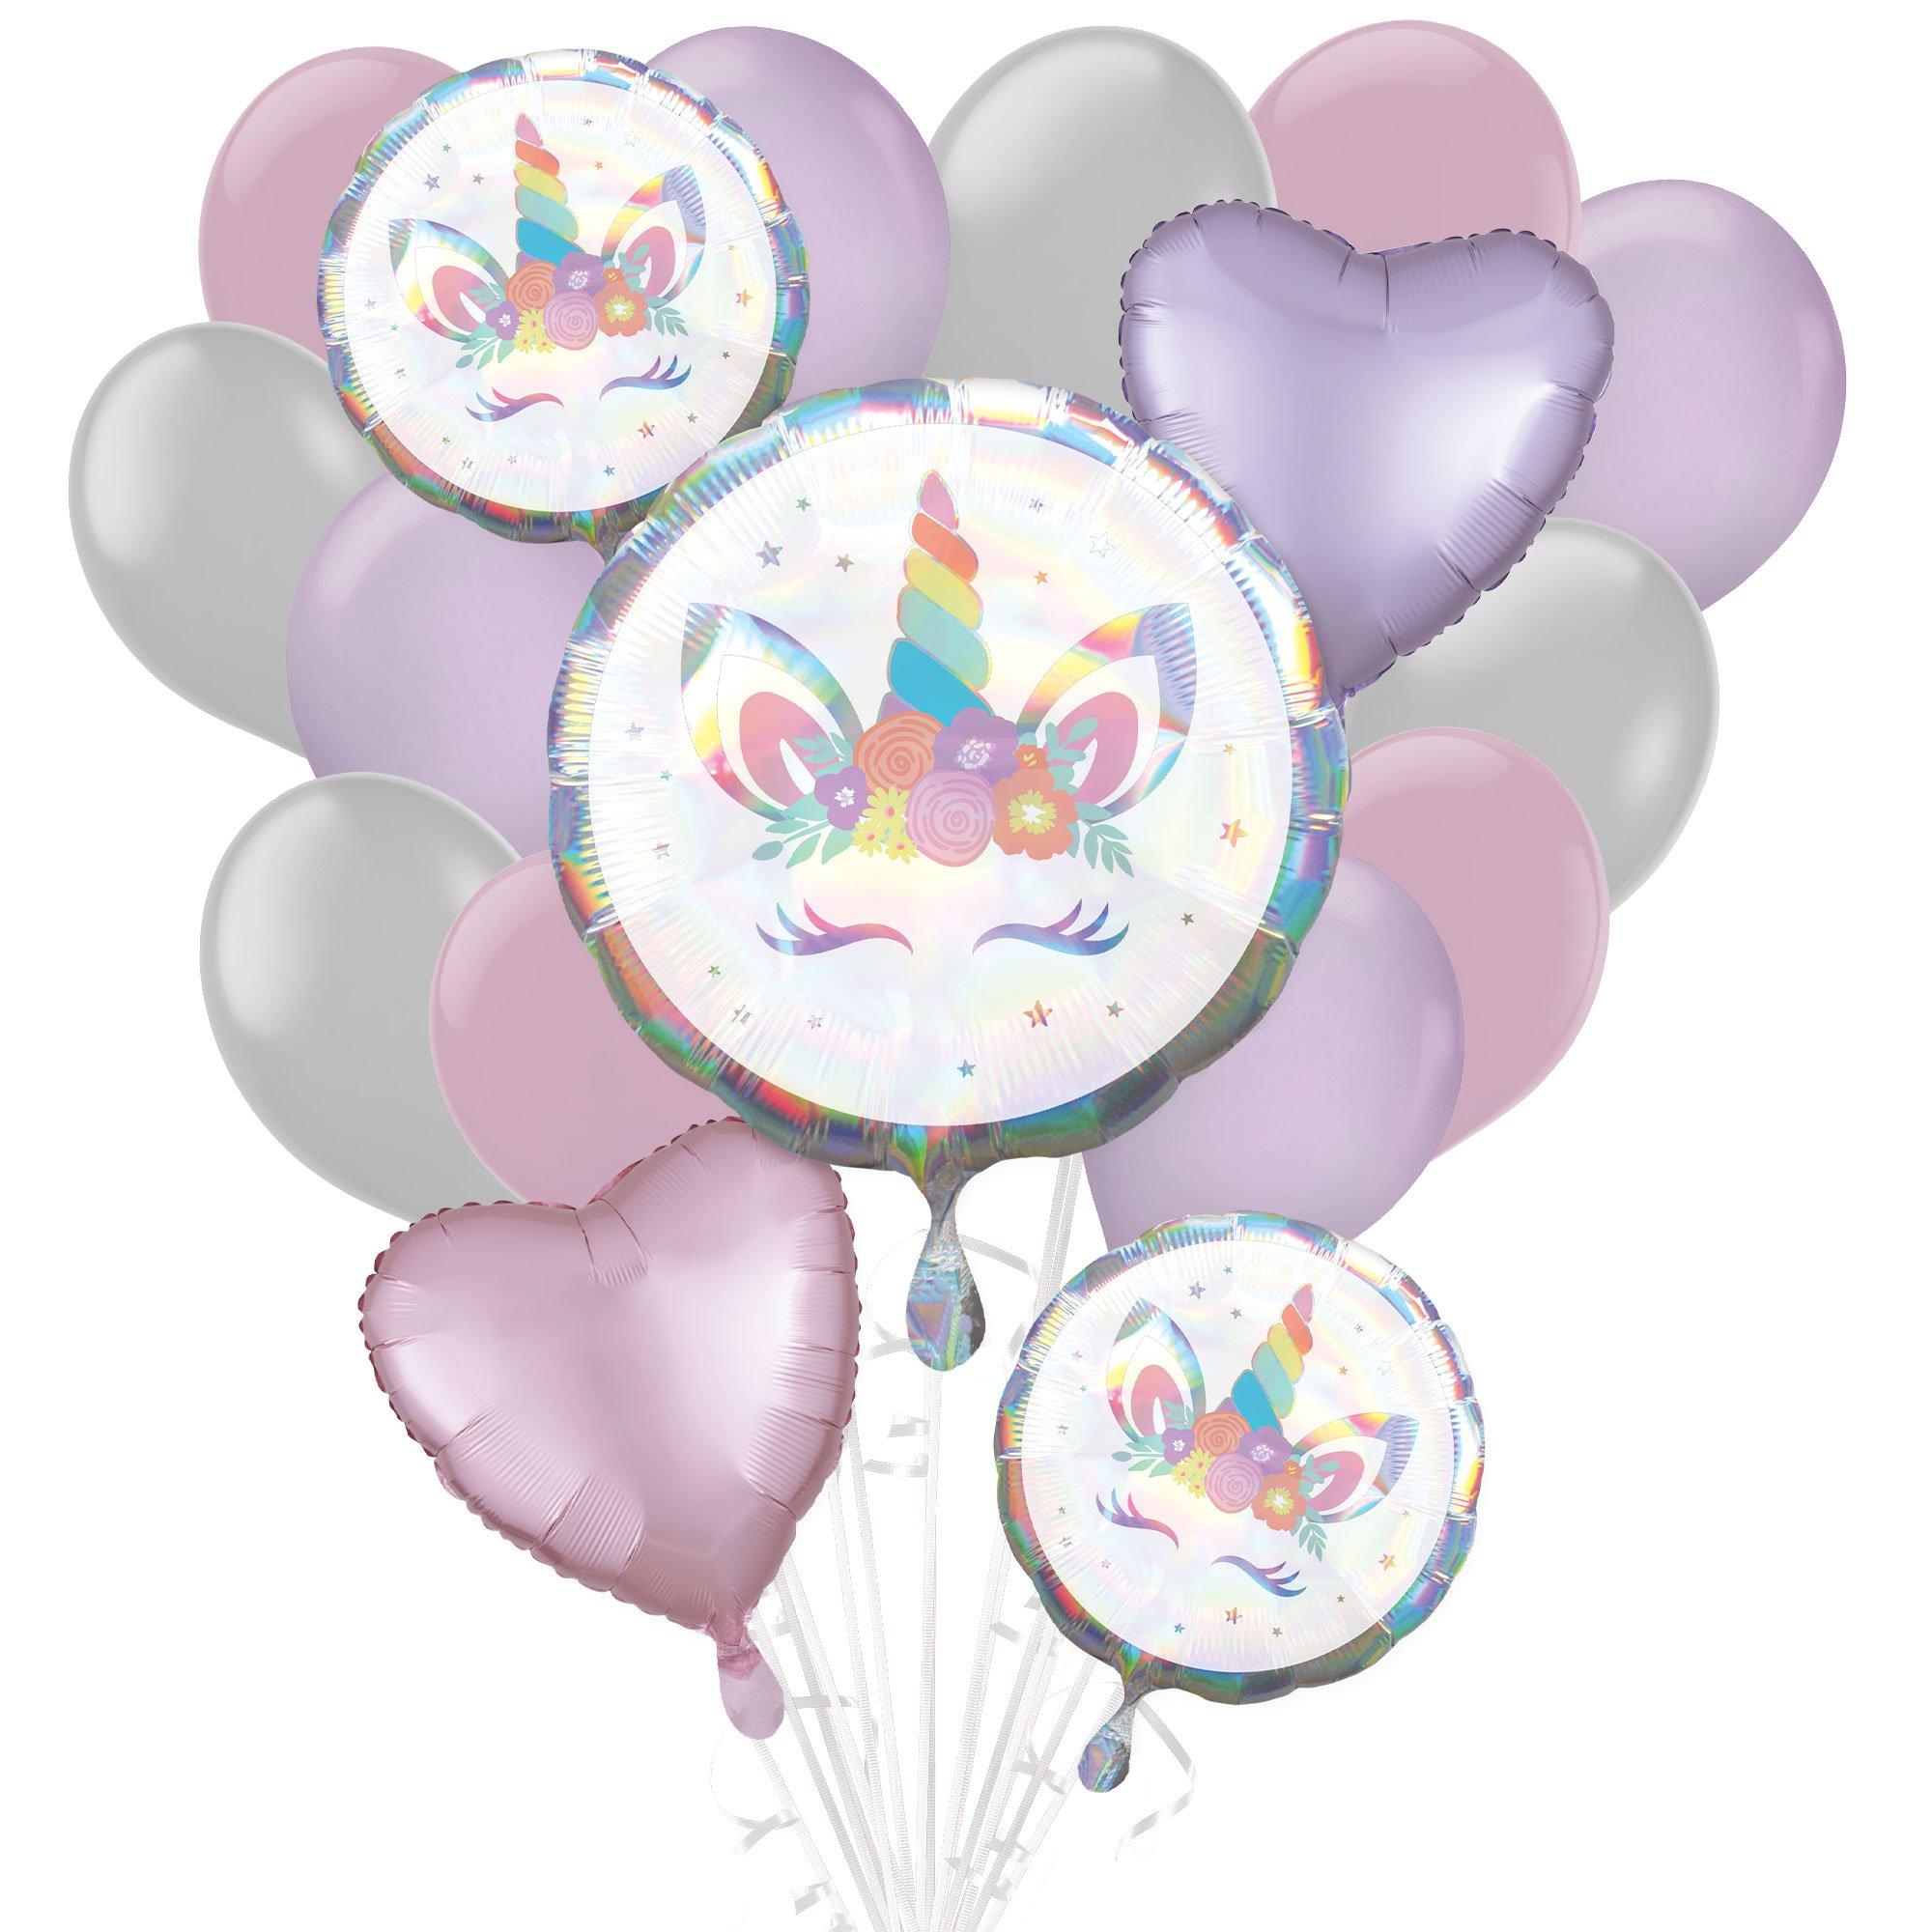 ShopNGift Printed Rainbow Unicorn Party Balloon fills with  Air / Helium Balloon - Balloon